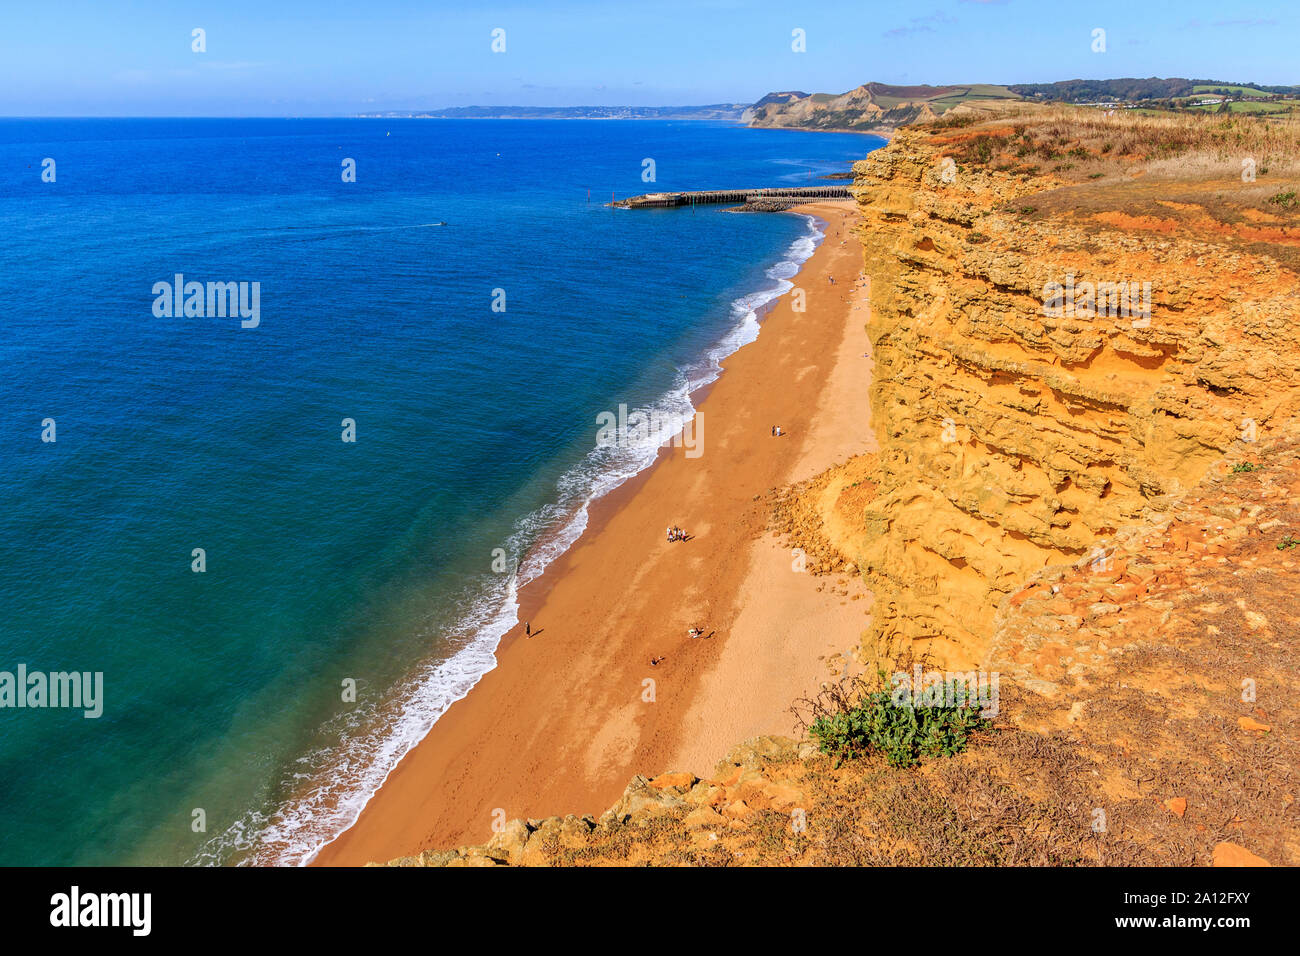 West Bay coast resort, Jurassic Coast, effondrement de falaises de grès,site de l'unesco, dorset, England, UK, FR Banque D'Images